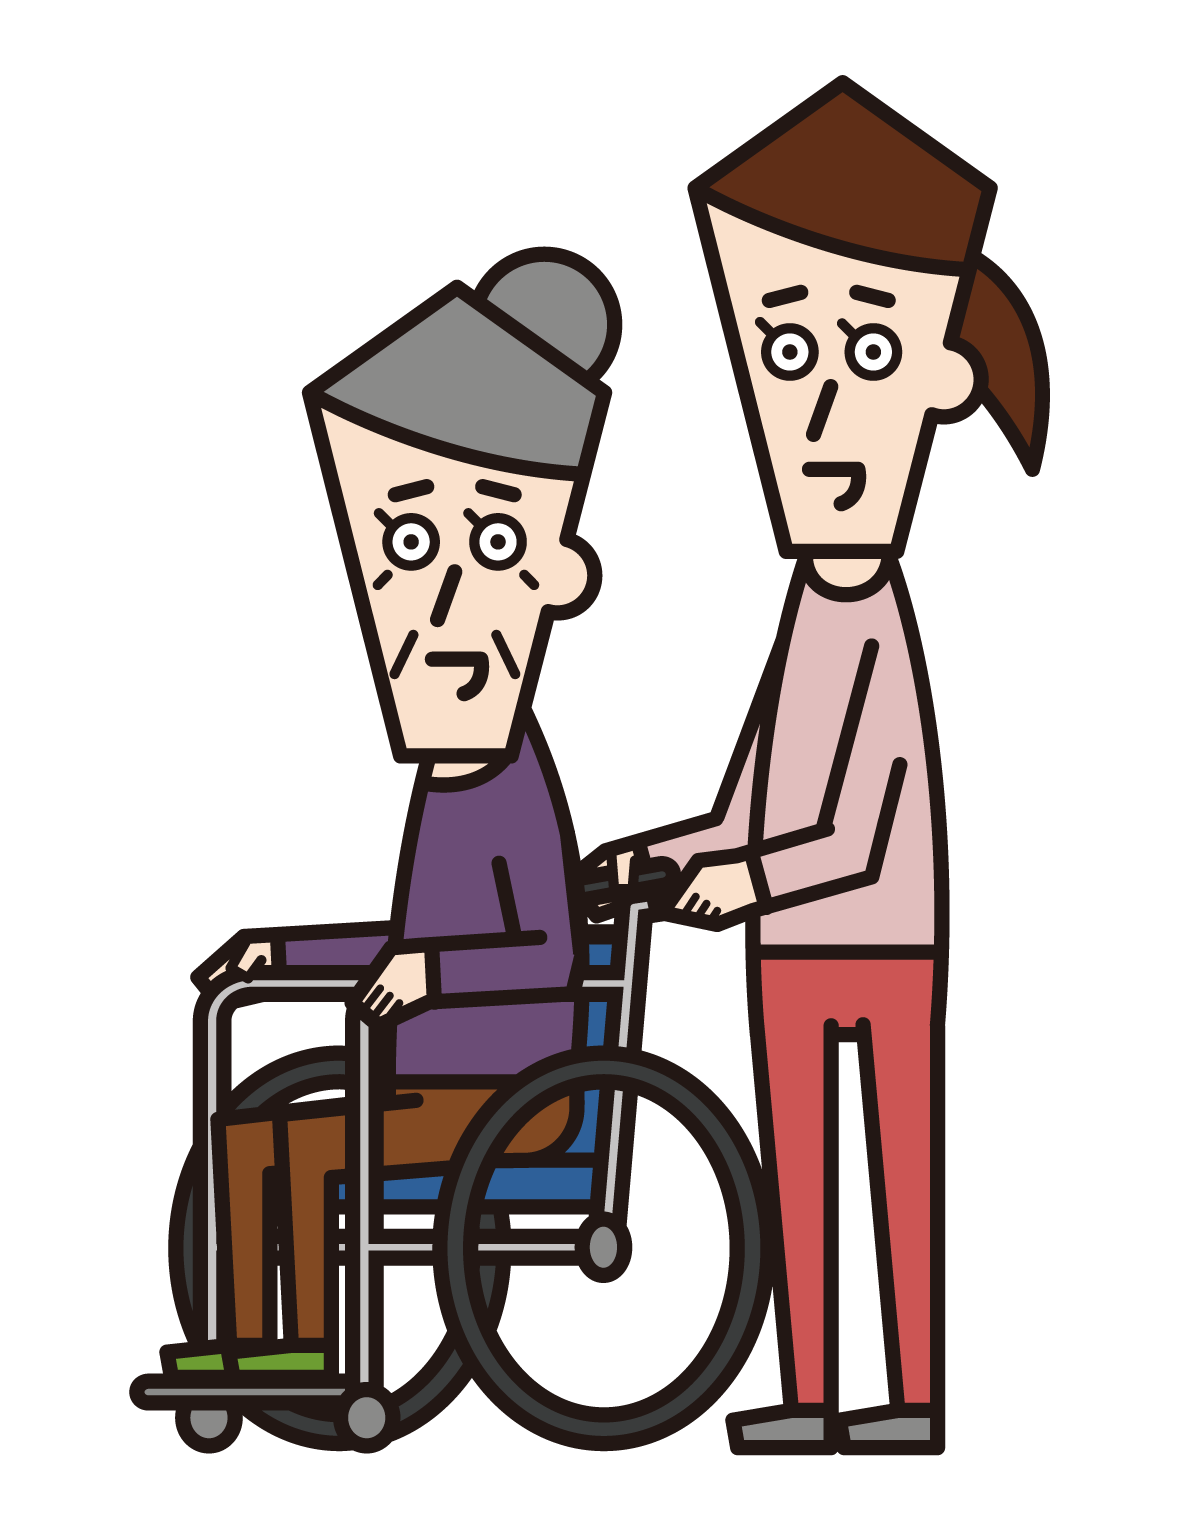 車椅子に乗っている人（おじいさん）と押す訪問介護員（男性）のイラスト